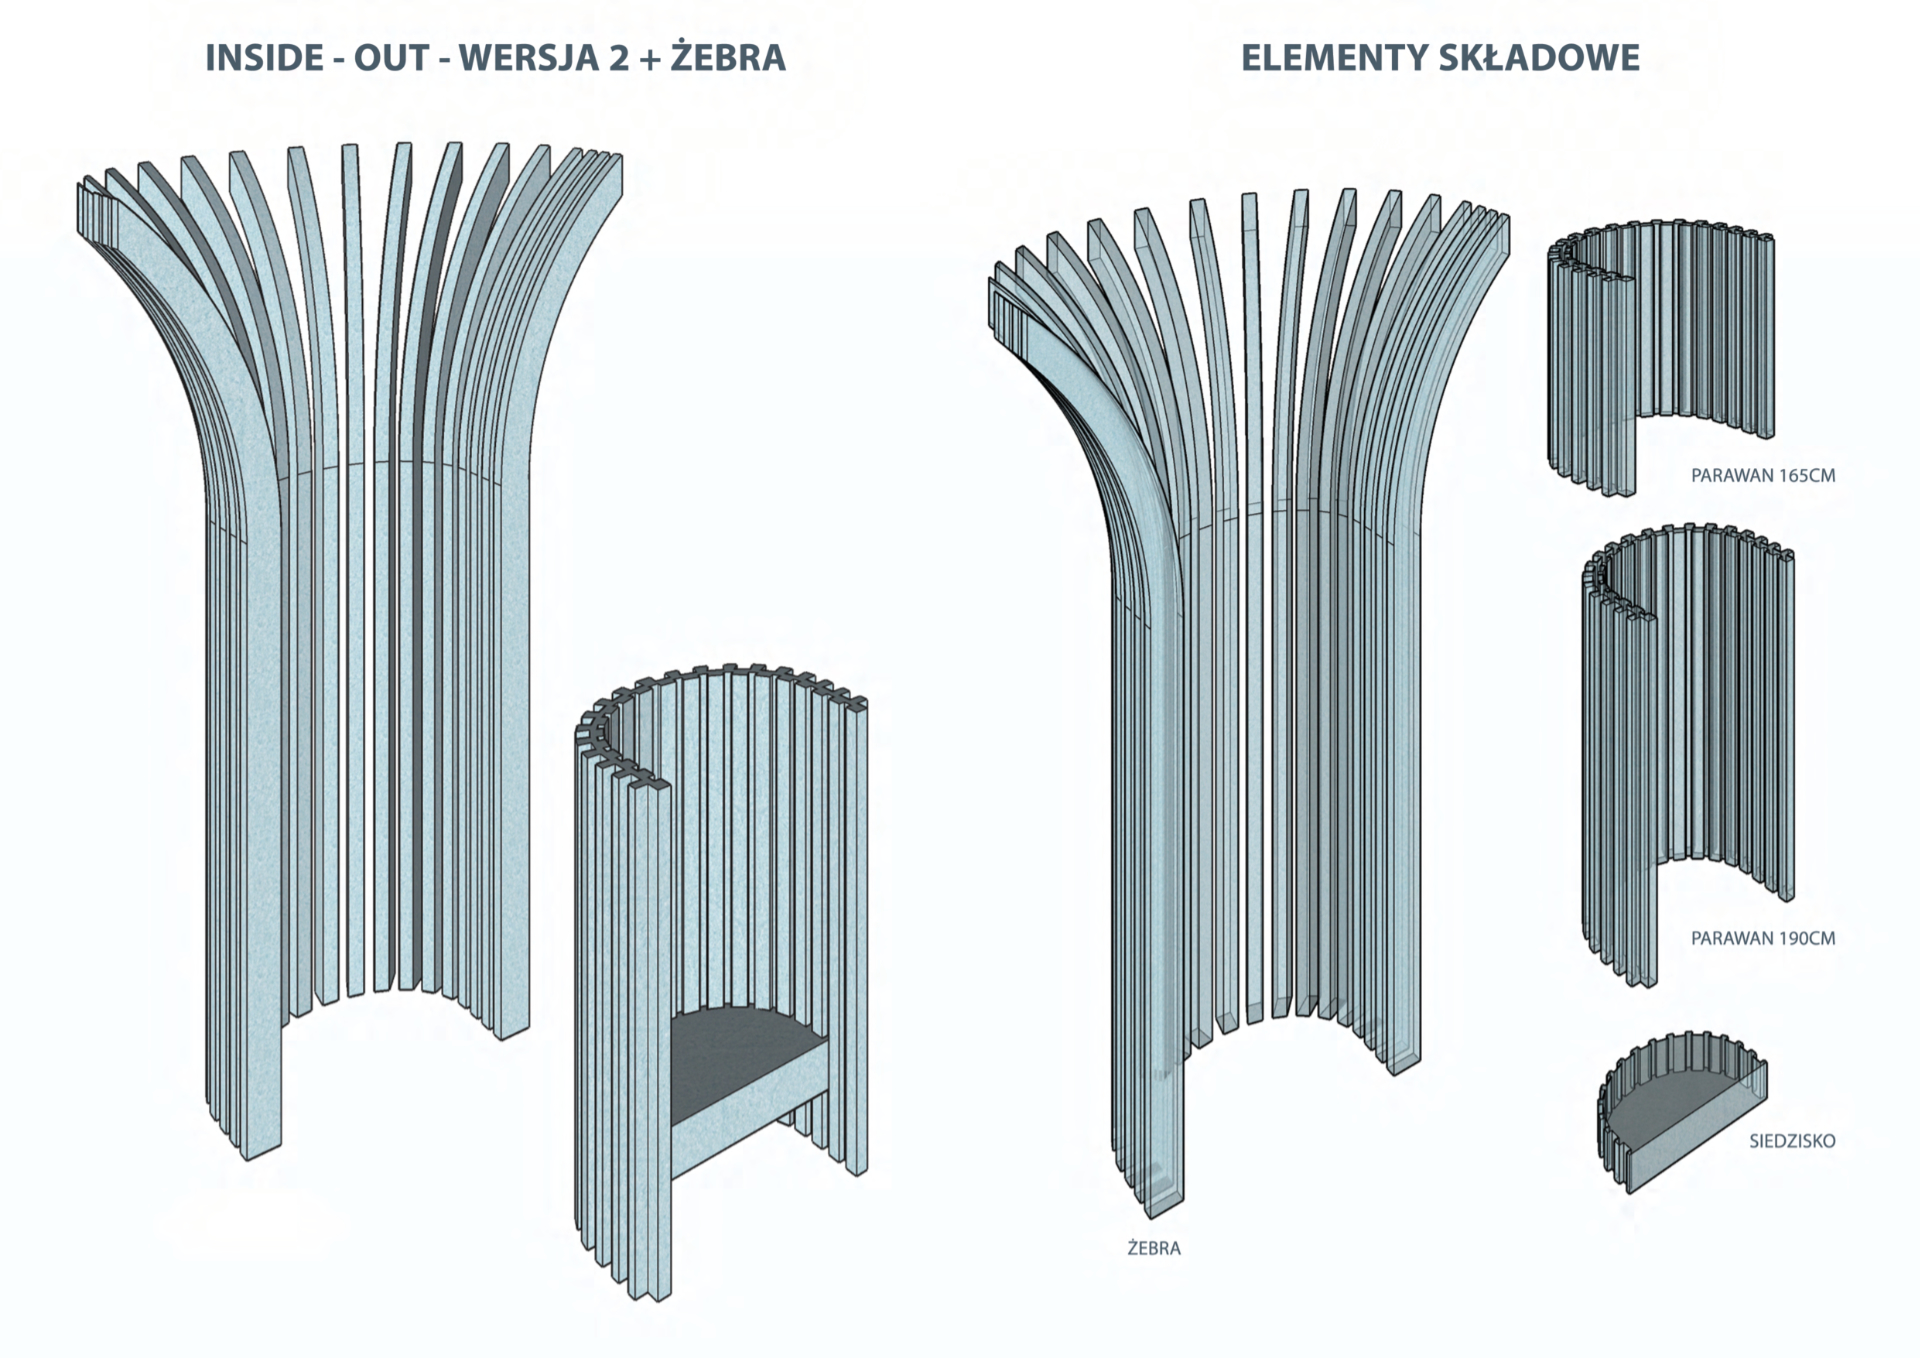 Projekt koncepcyjny systemu siedzisk wykonanych z filcu – systematyka elementów w formie rysunków technicznych (aksonometrie).